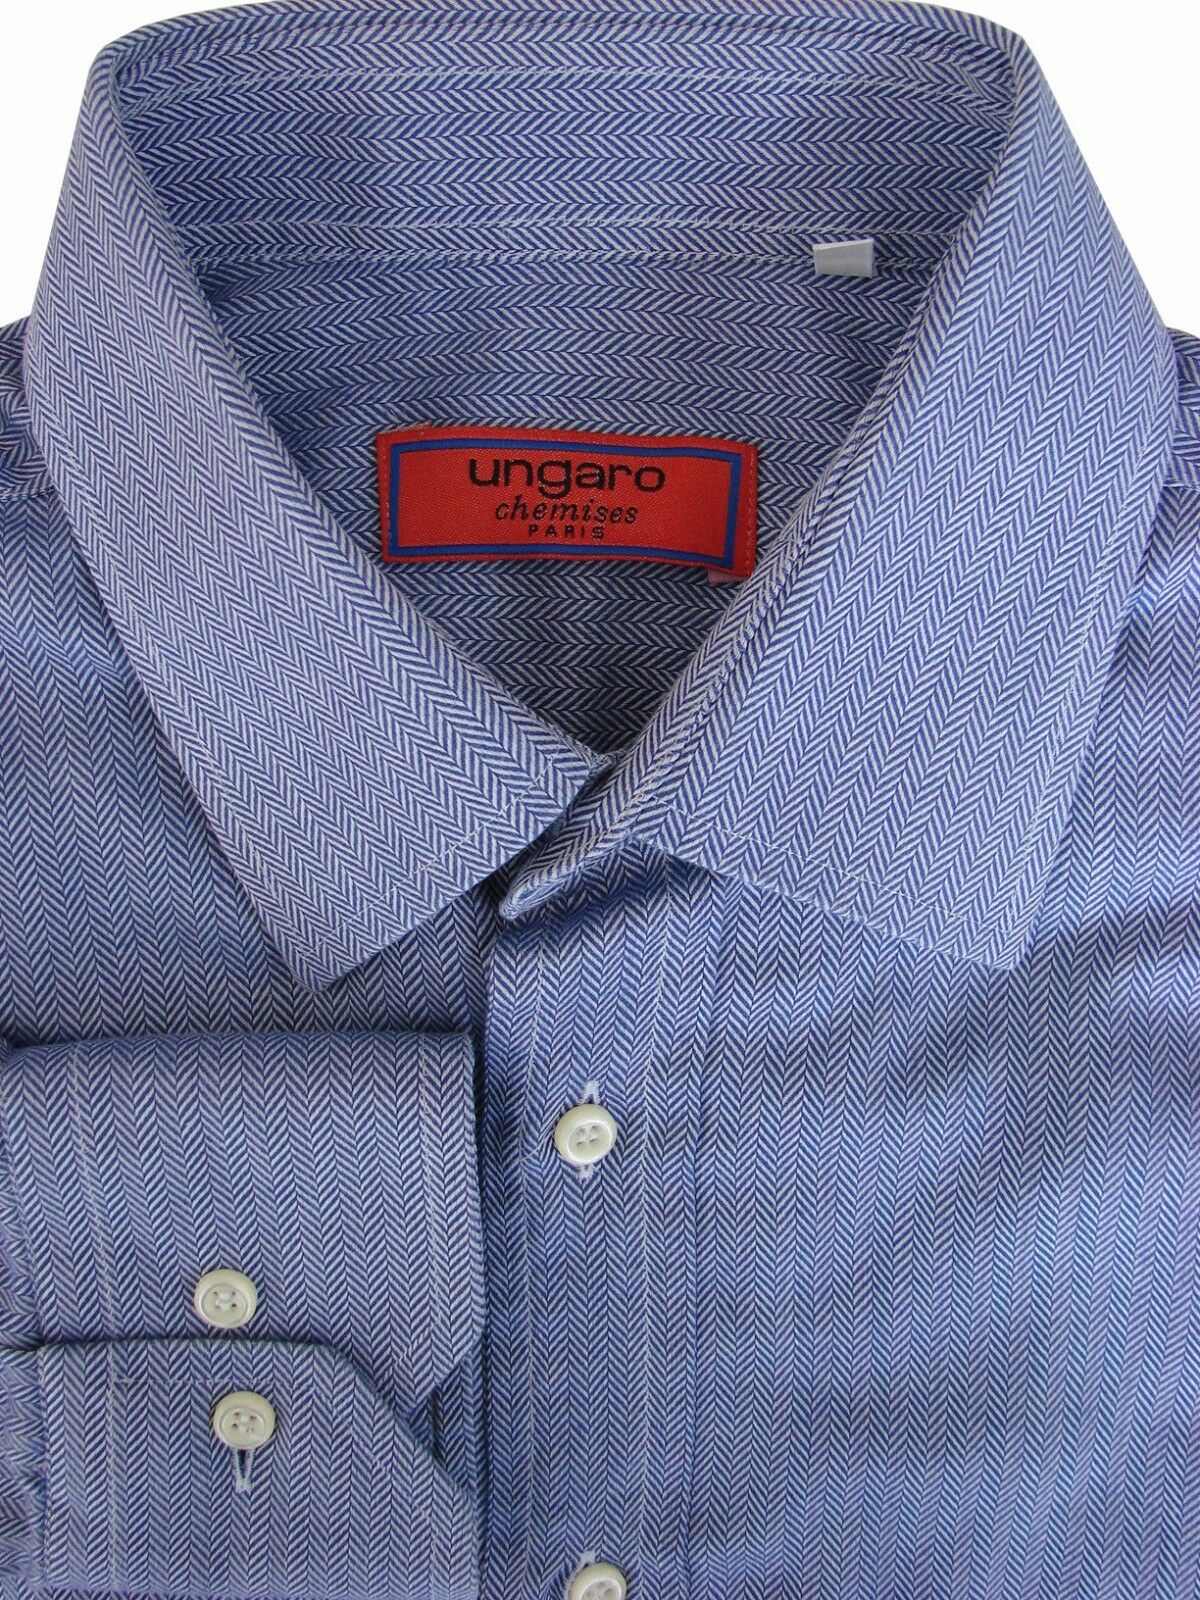 UNGARO Shirt Mens 15 S Blue - HERRINGBONE Stripes - Brandinity